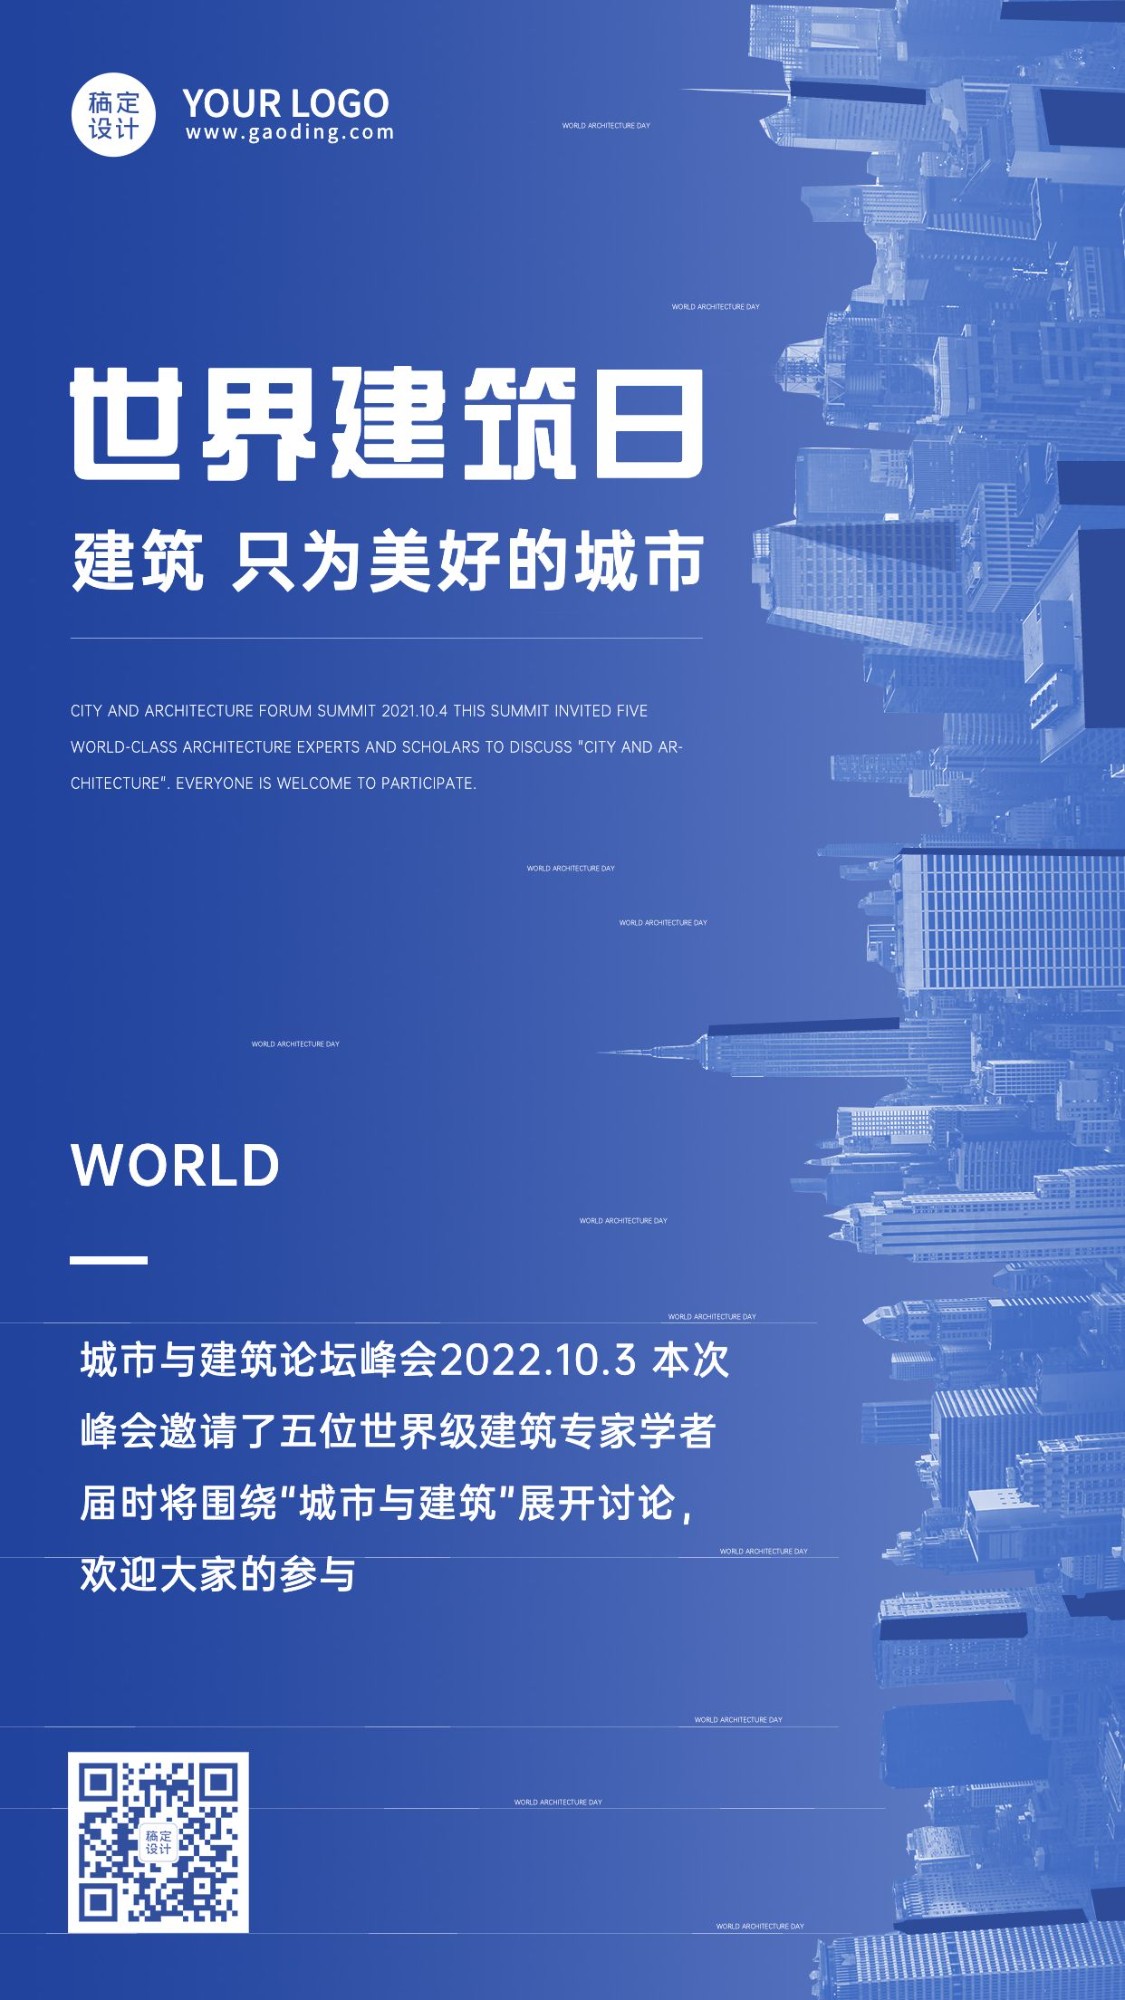 世界建筑日节日祝福科技海报预览效果